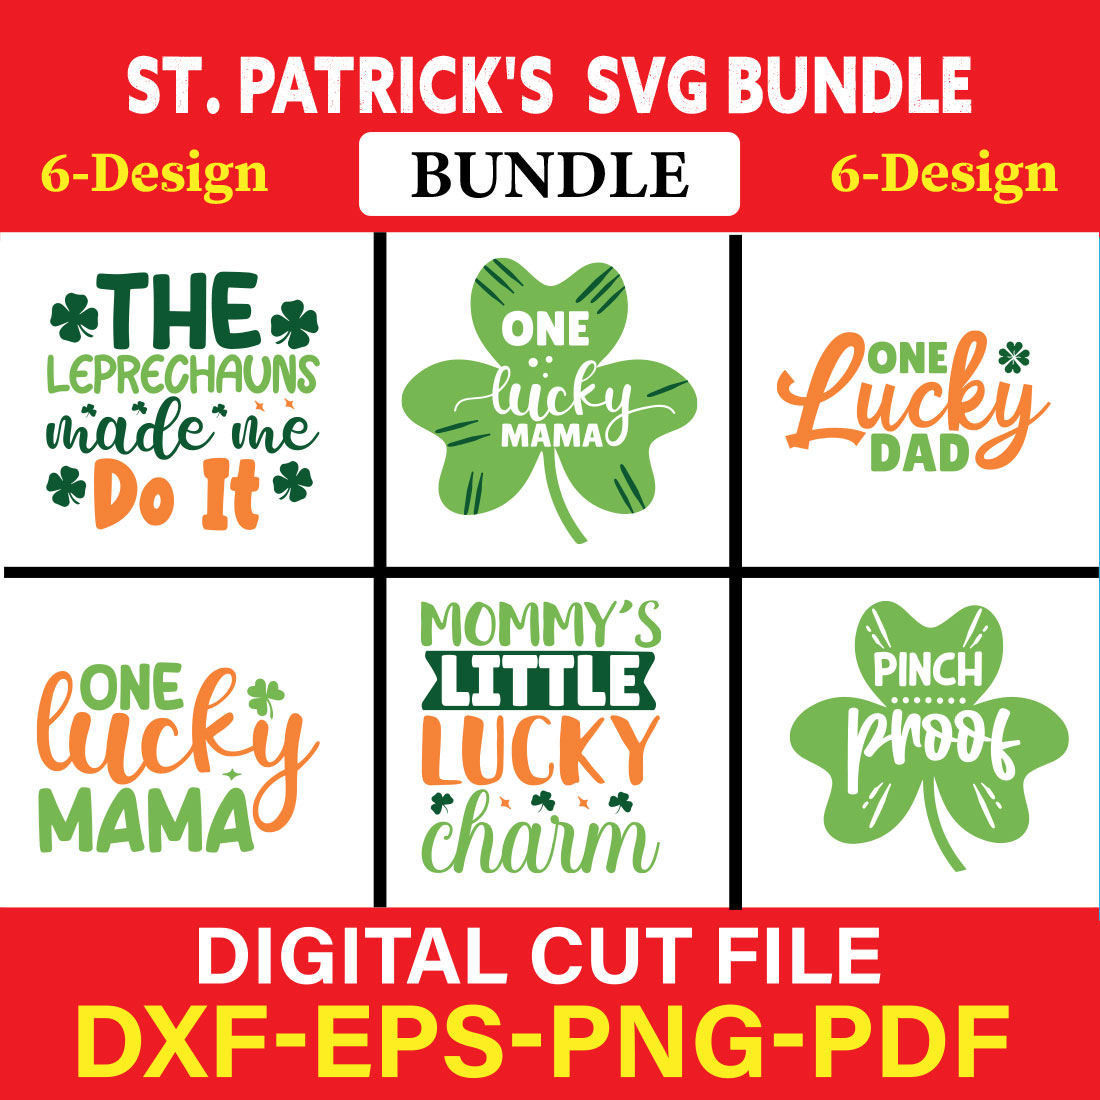 St Patrick's T-shirt Design Bundle Vol-4 cover image.